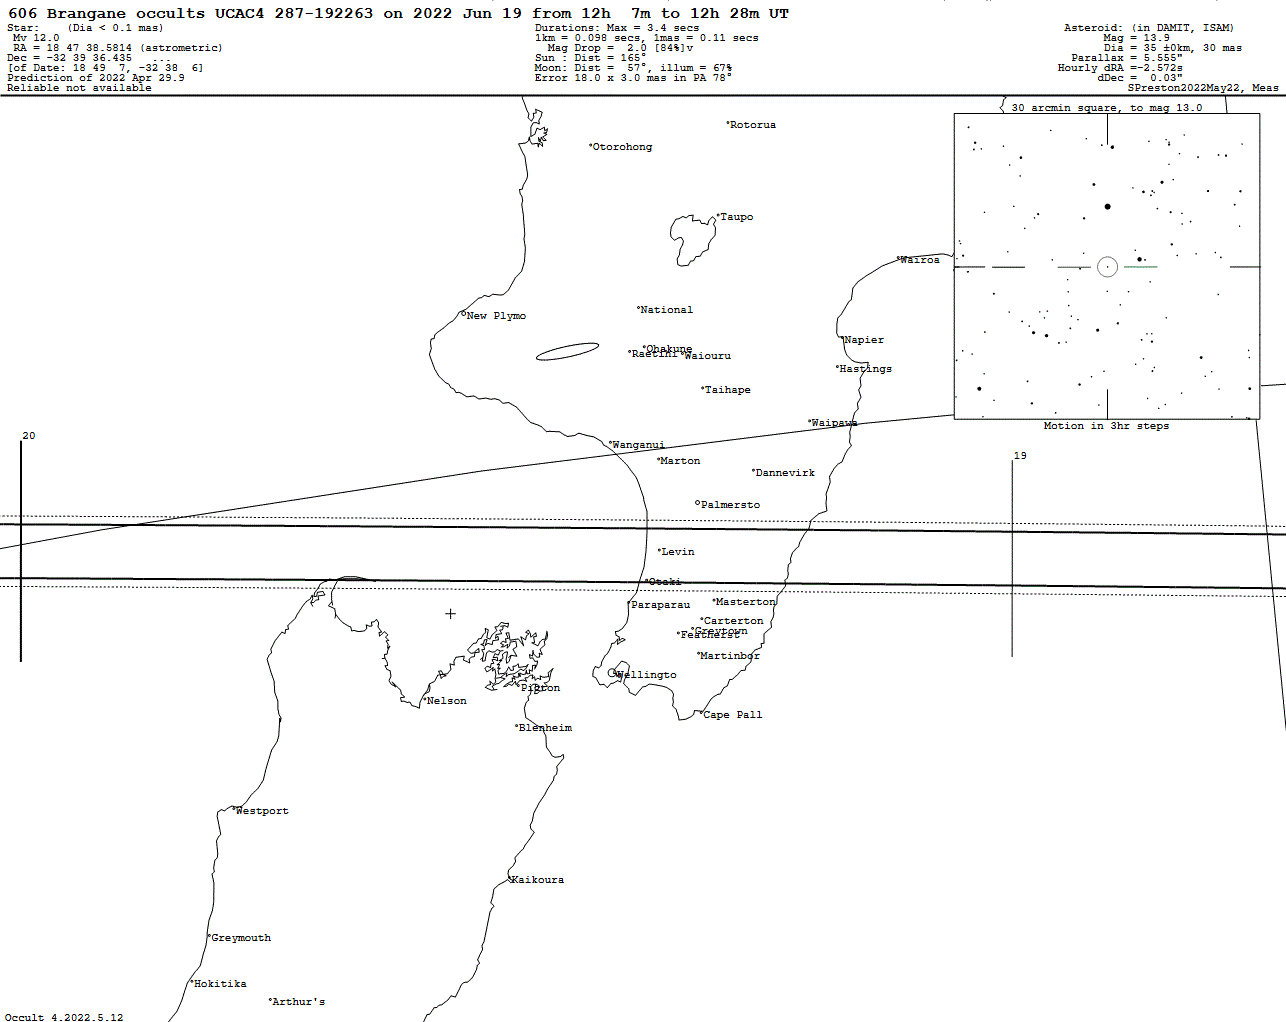 Brangane Update Map